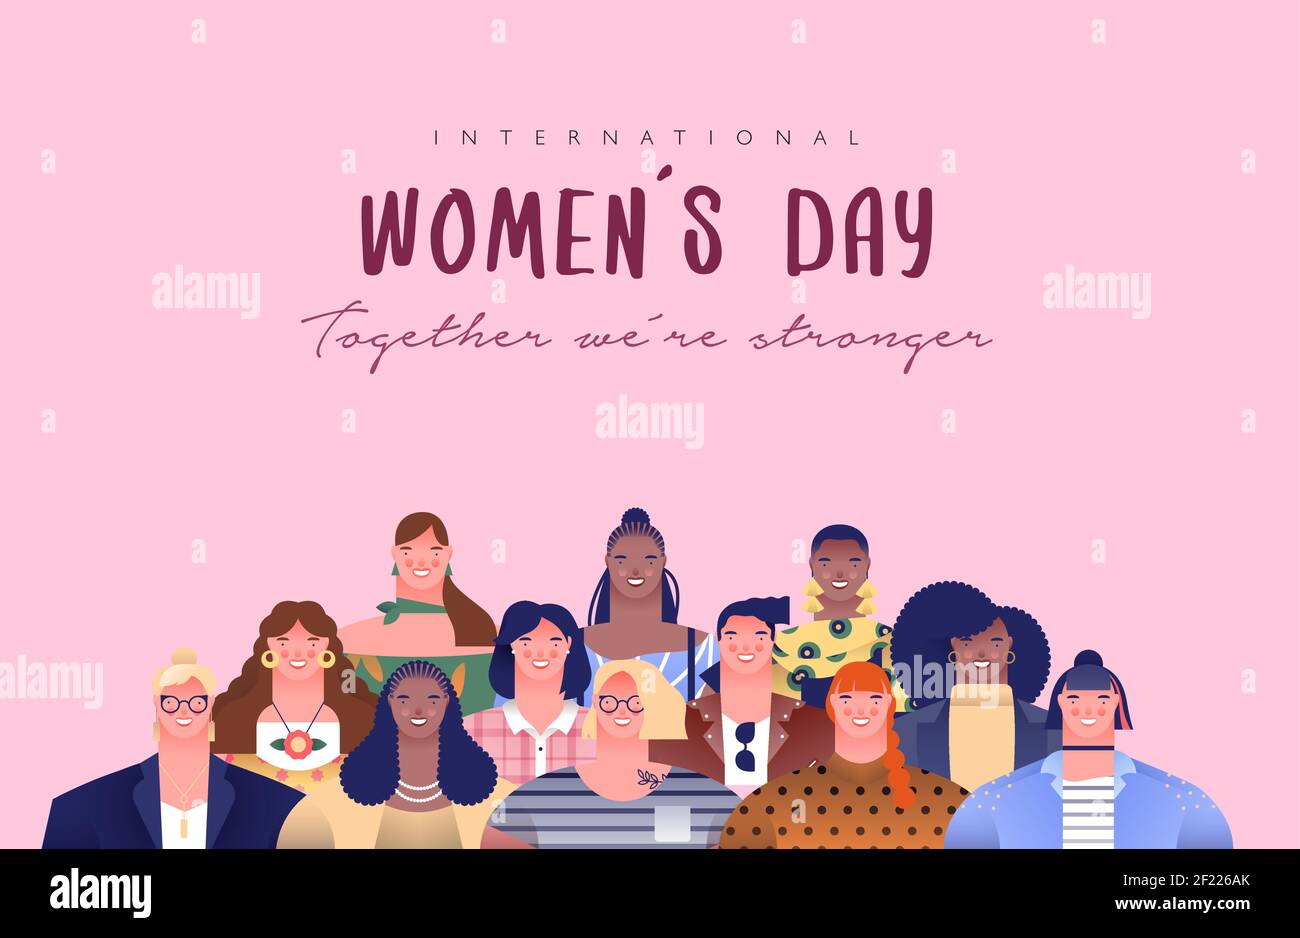 Internationaler Frauentag Grußkarte Illustration von verschiedenen jungen Frauen Charaktere für besondere Frauenrechte Event Urlaub oder feministische Kampagne Des Stock Vektor